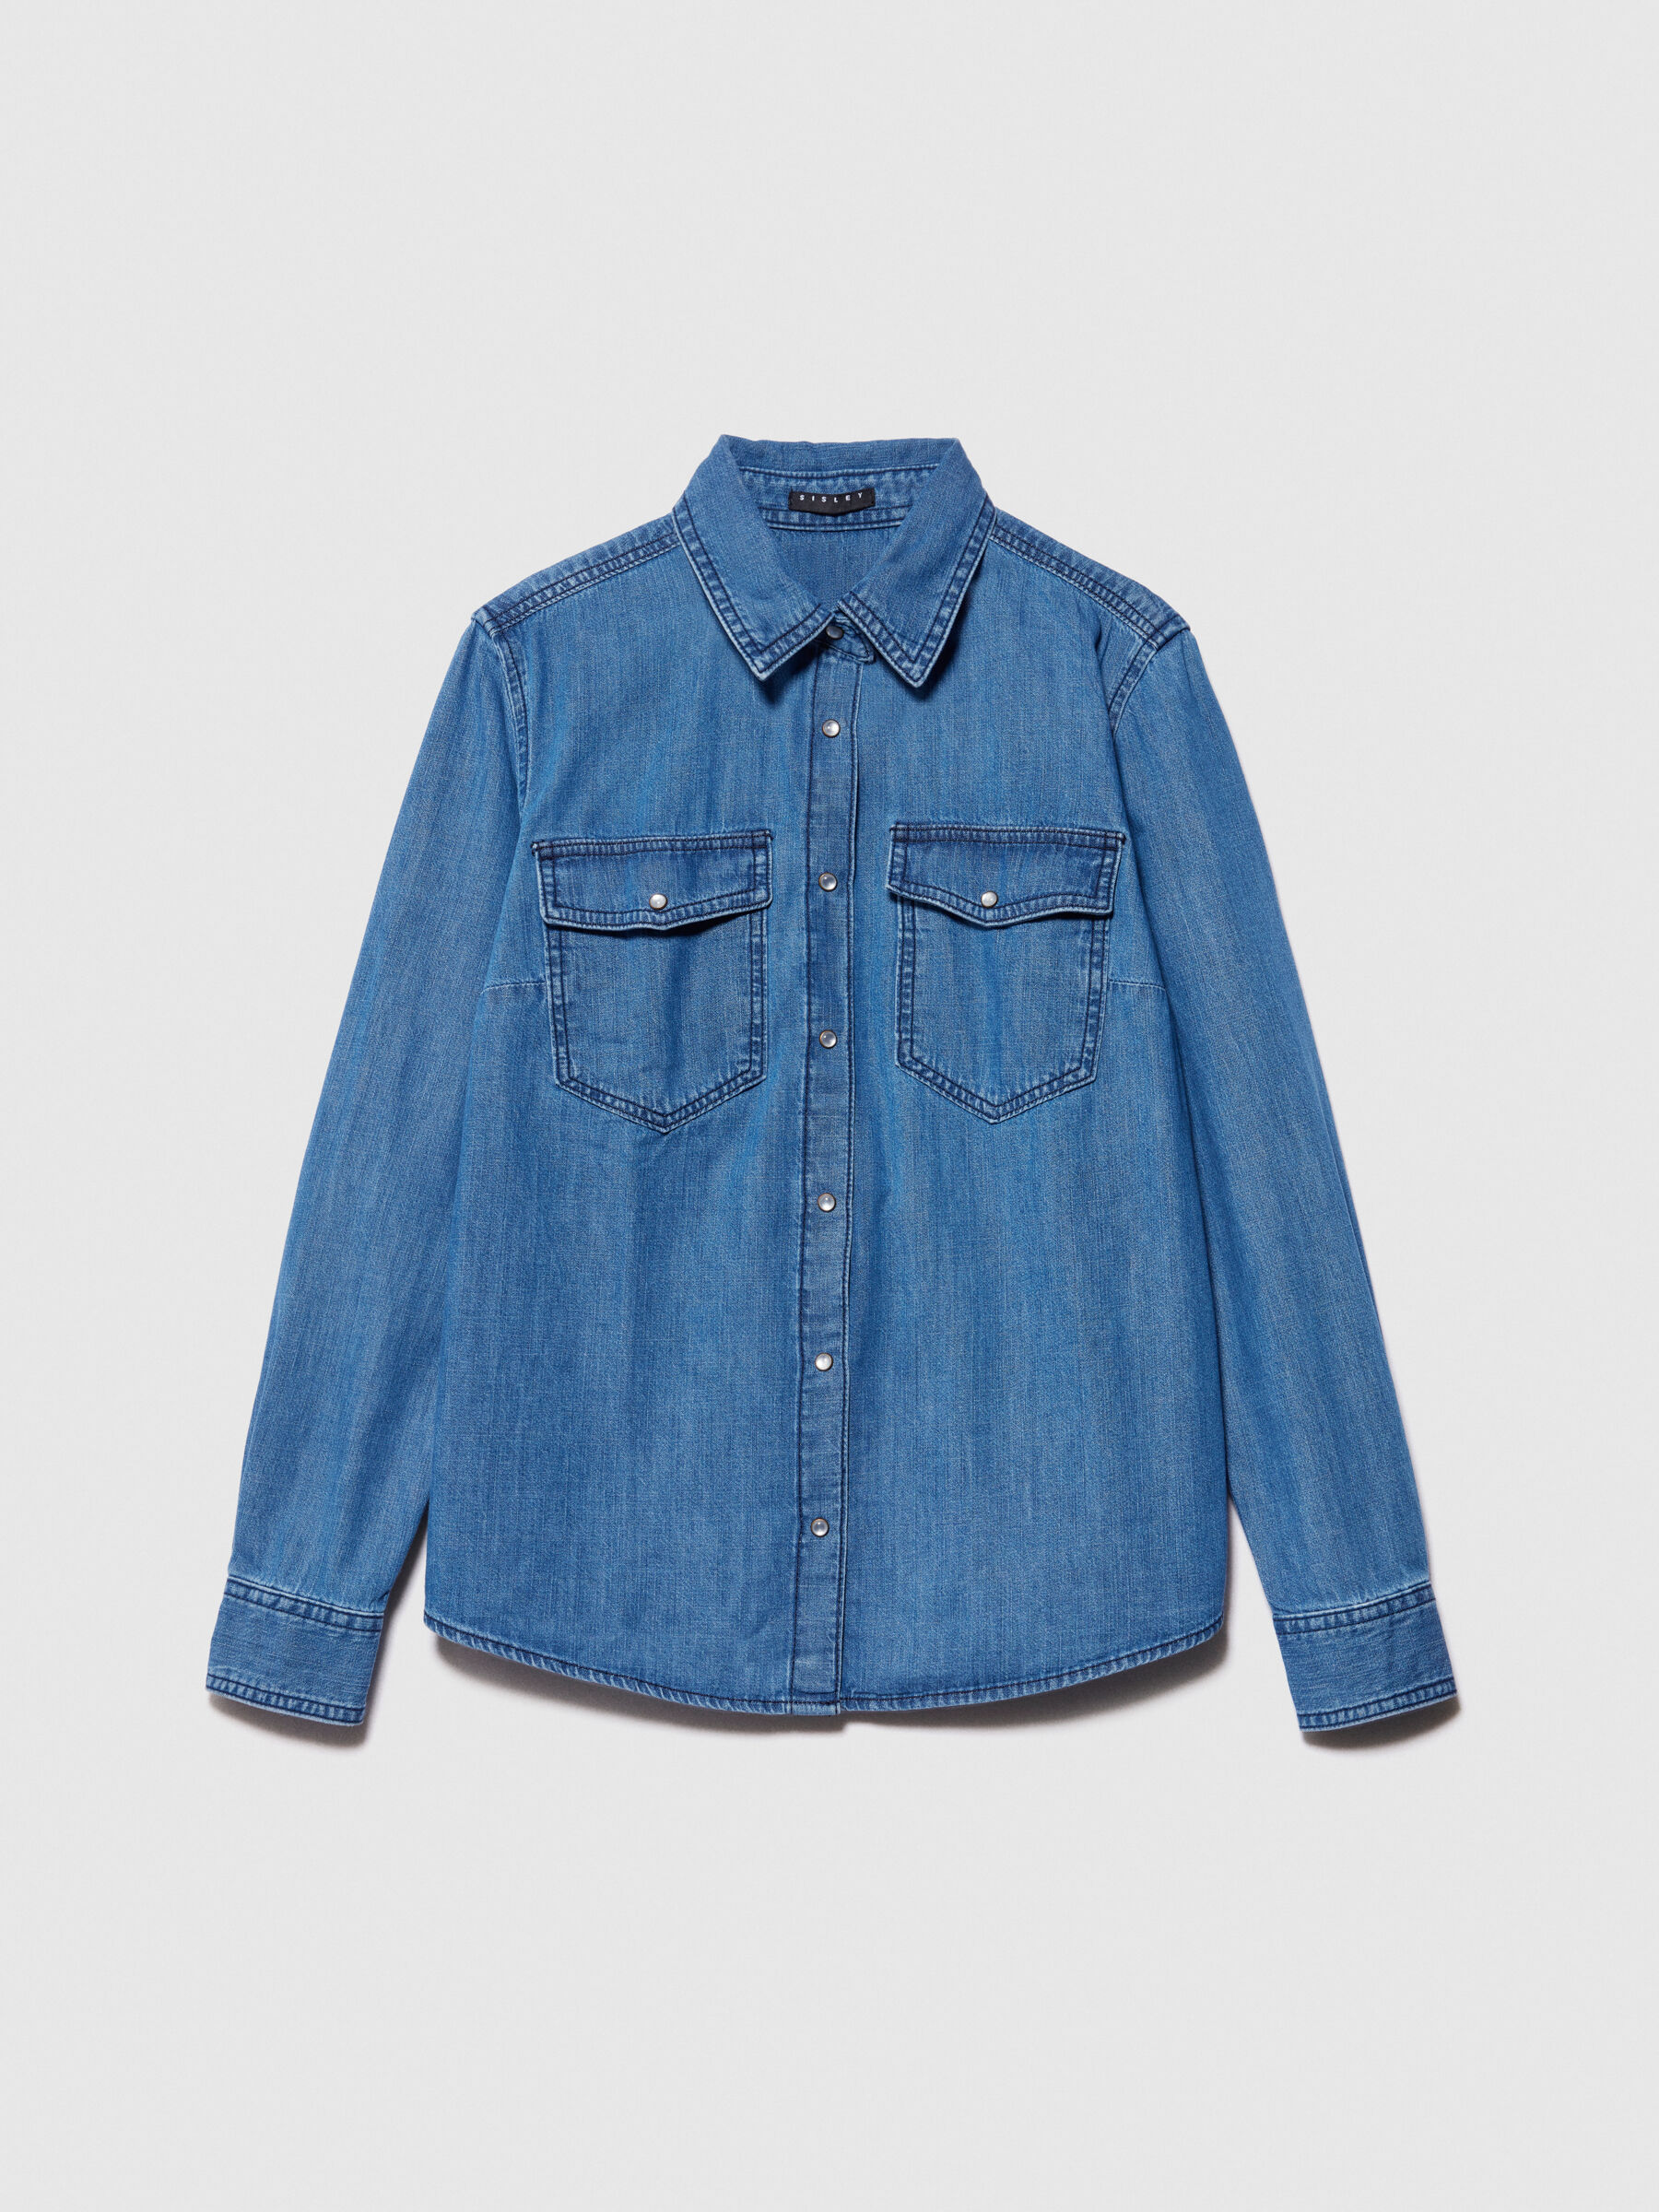 Men Blue Denim Shirt Casual Western Shirt Jean Button Front Top Long Sleeve  | eBay